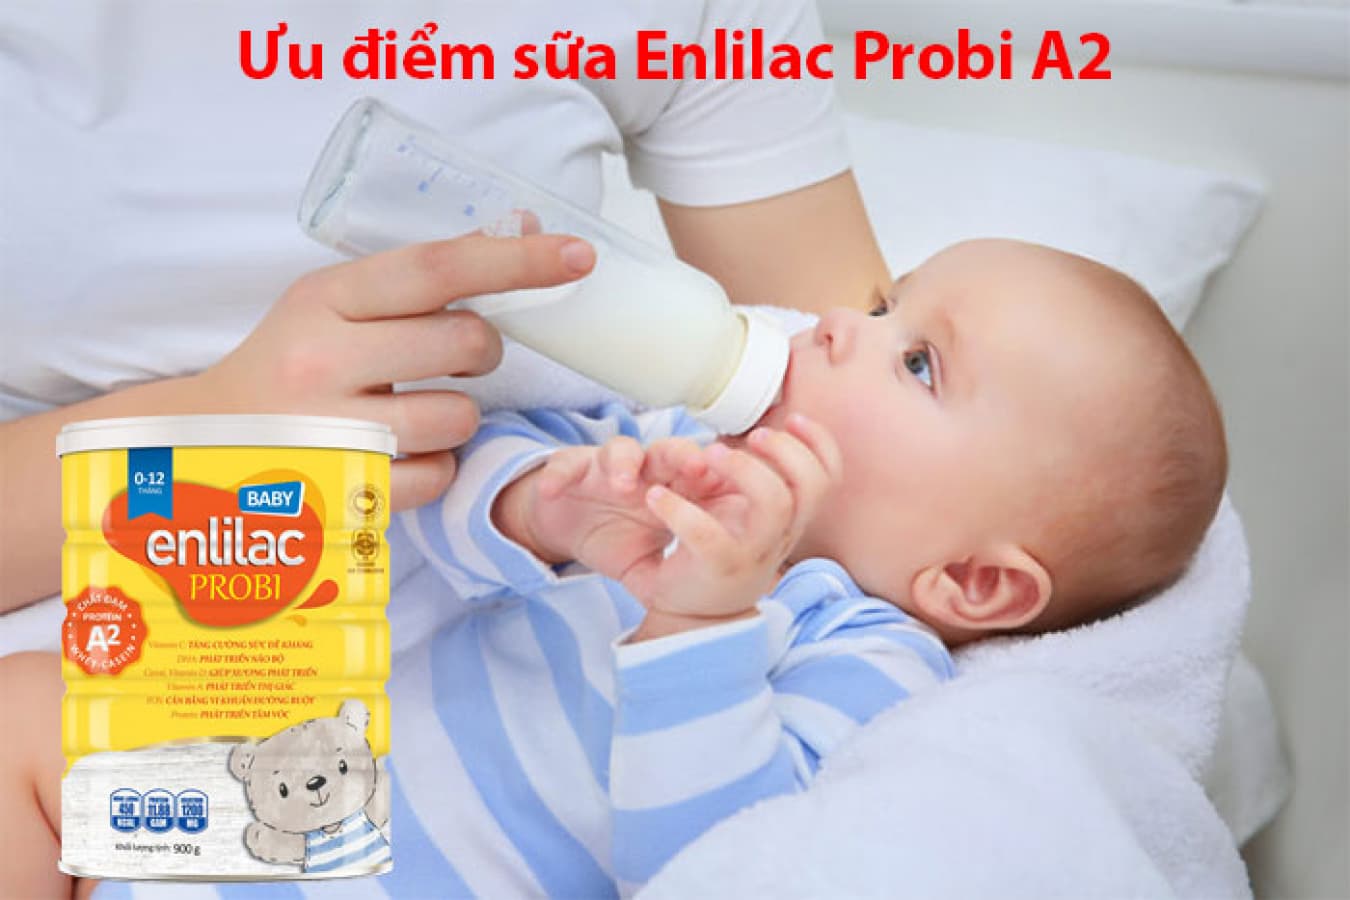 Enlilac Probi A2 Baby dòng sữa ăn dặm cho bé phát triển toàn diện